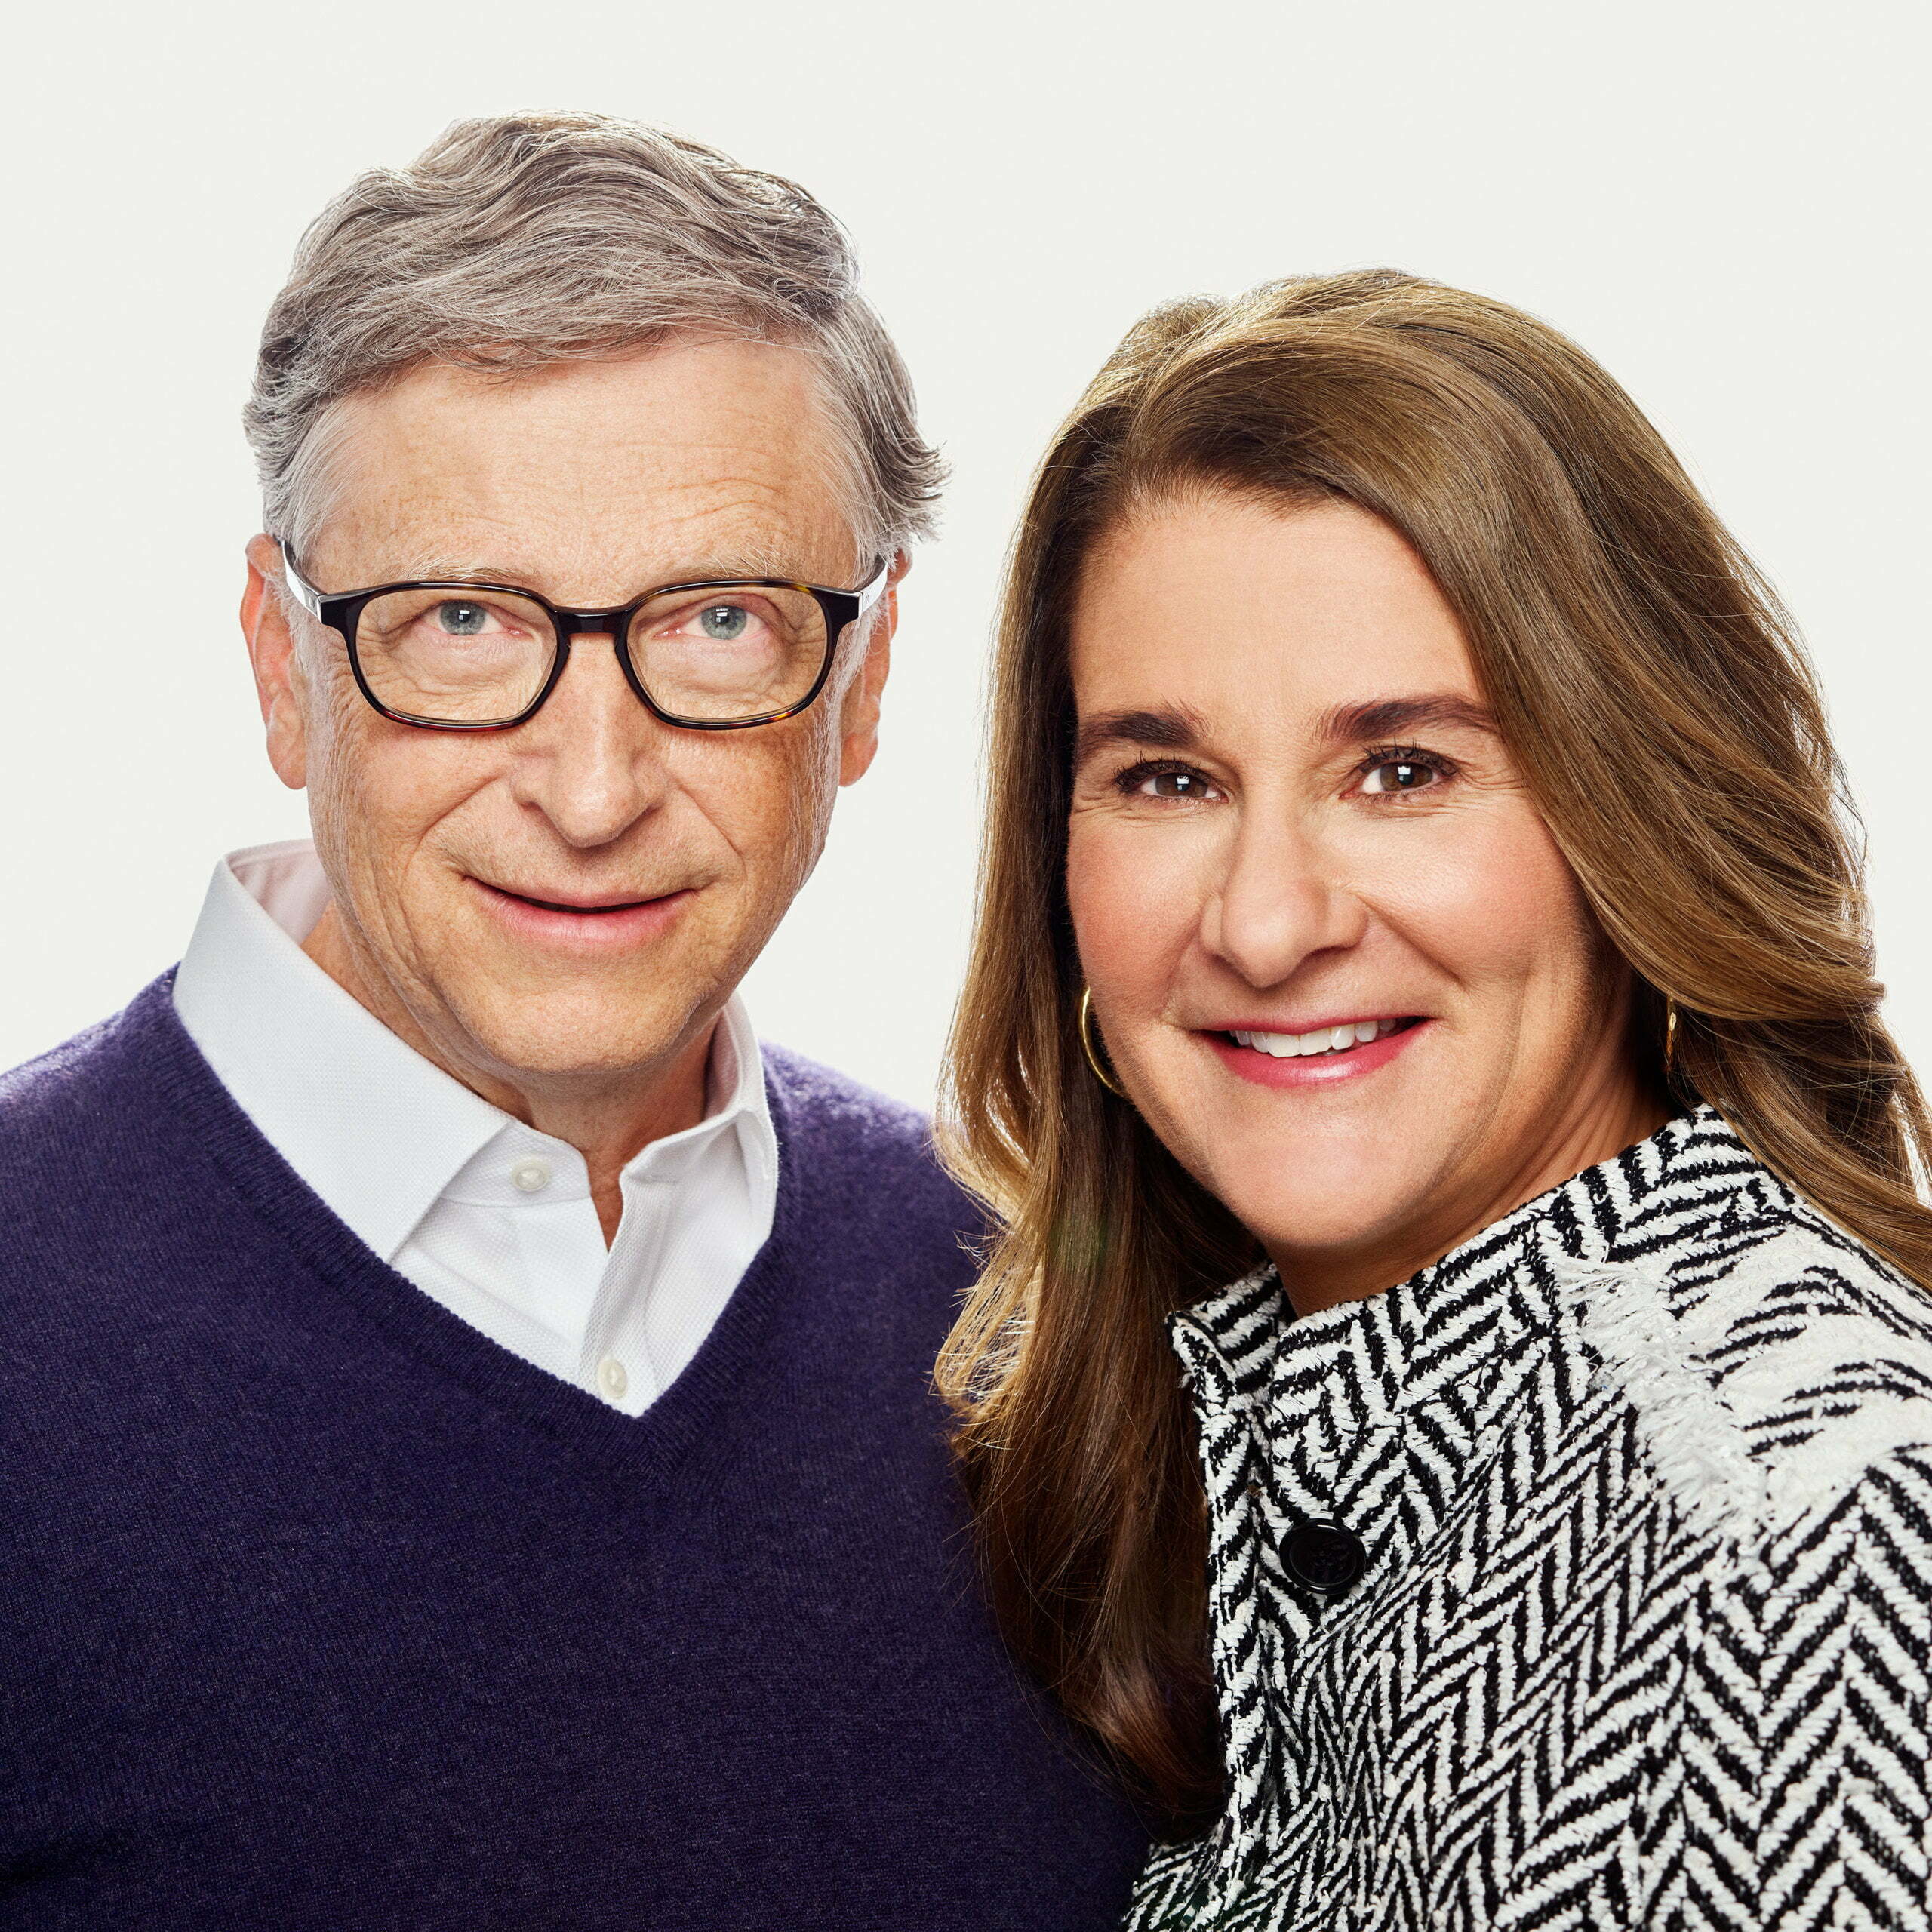 Melinda Gates Calls Out Gender Tech Divide in India